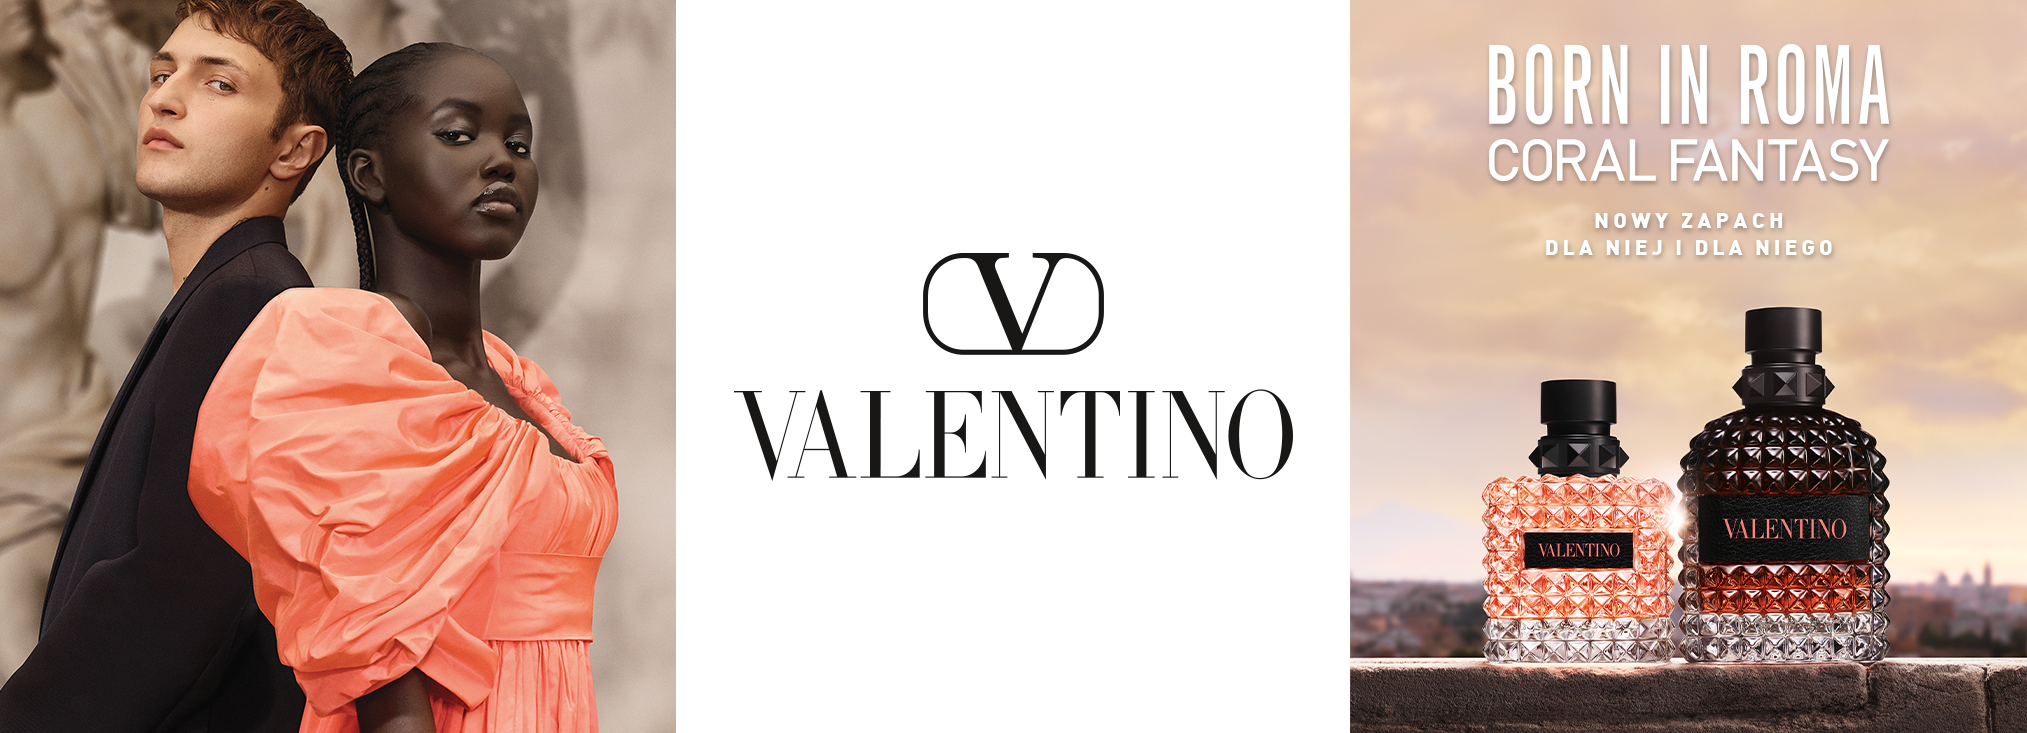 Valentino Born in Roma